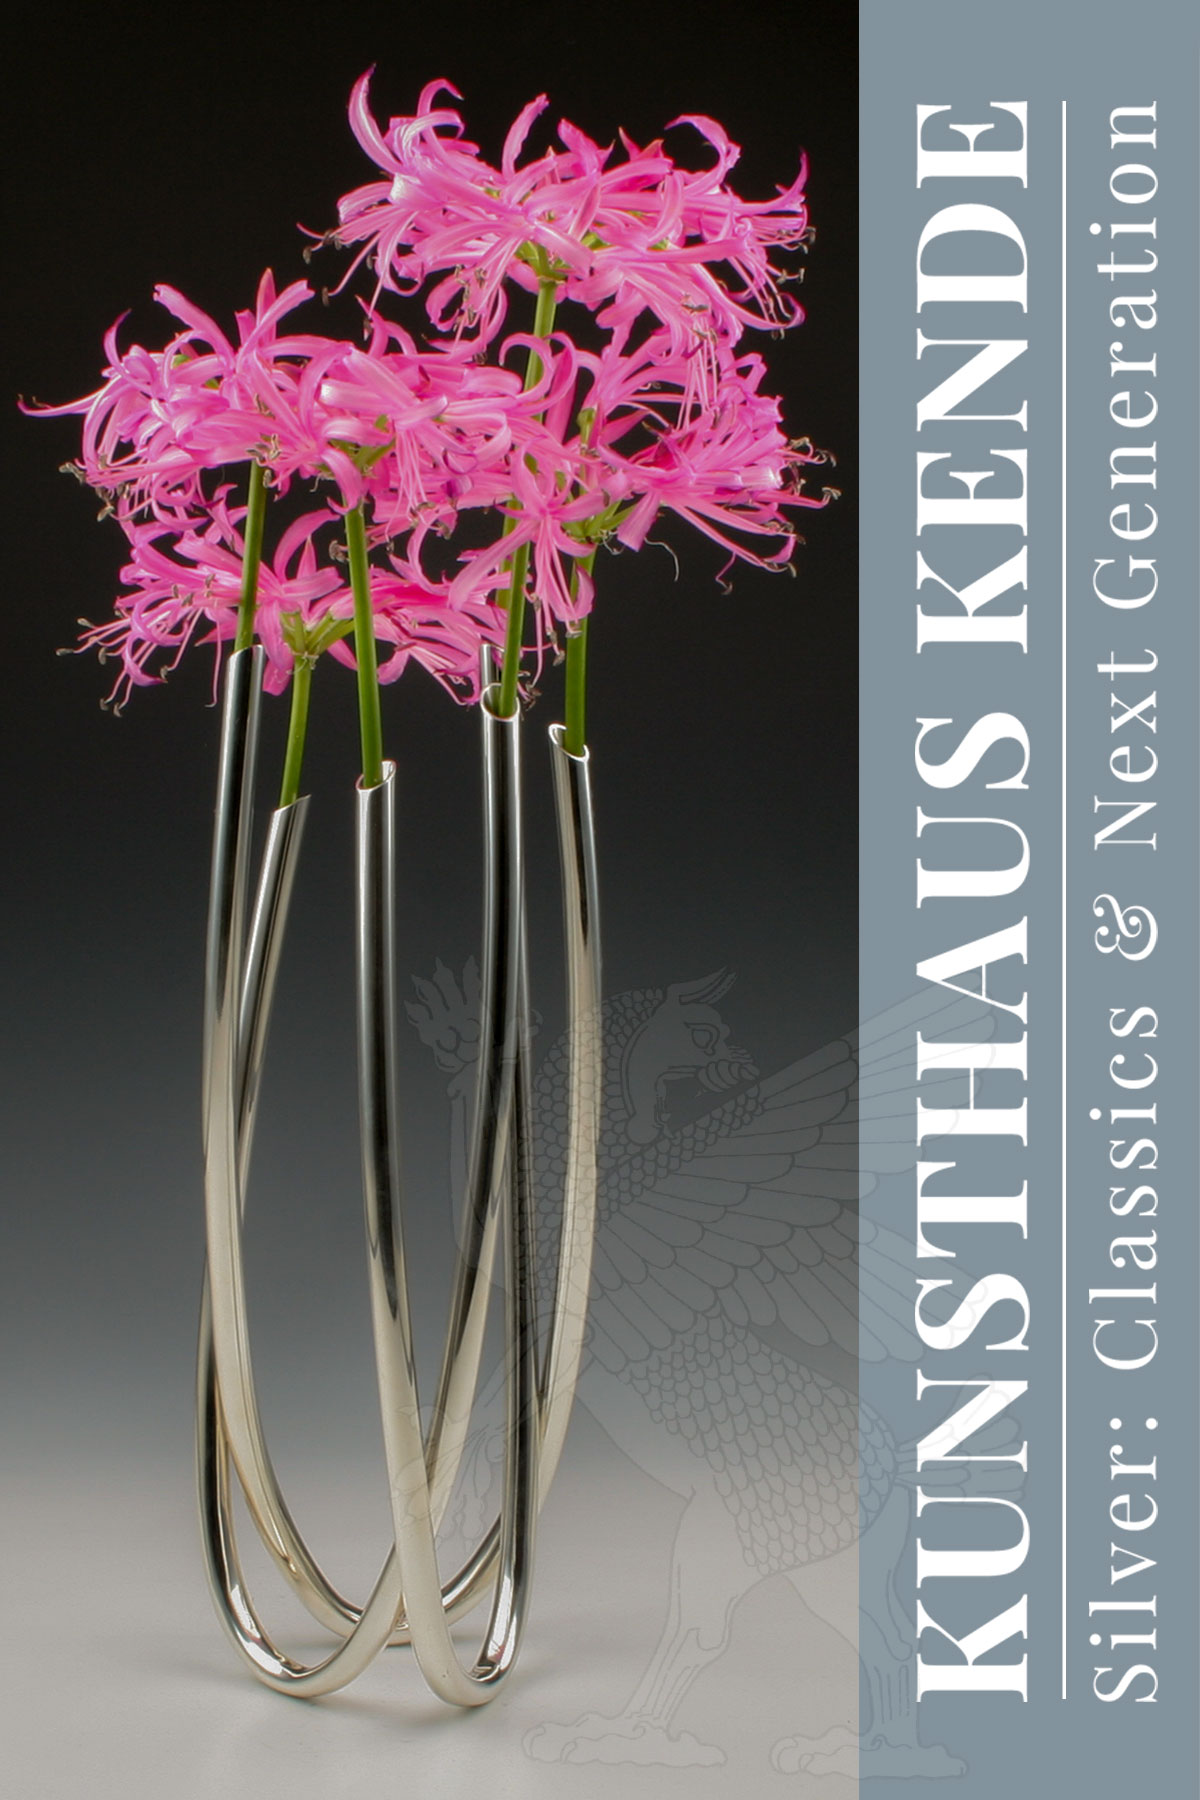 Sterling Silber Tischvase London 2020 Blumenvase Next Generation Vase Silbervase